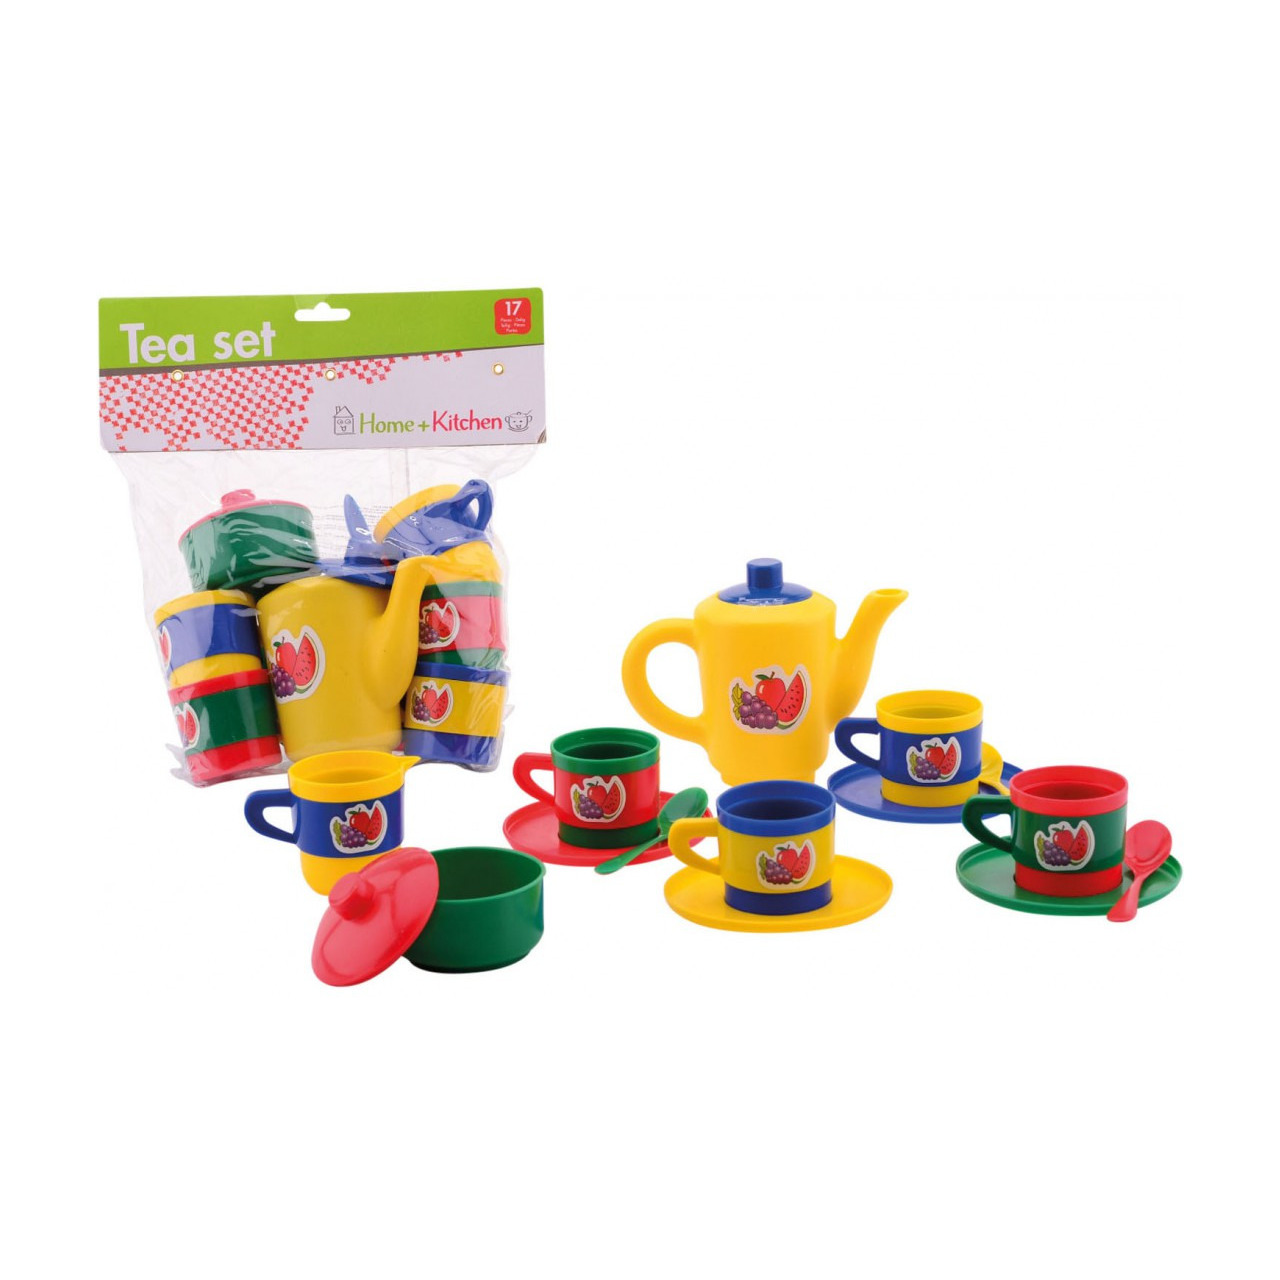 Speelgoed thee set voor kinderen 17 delig